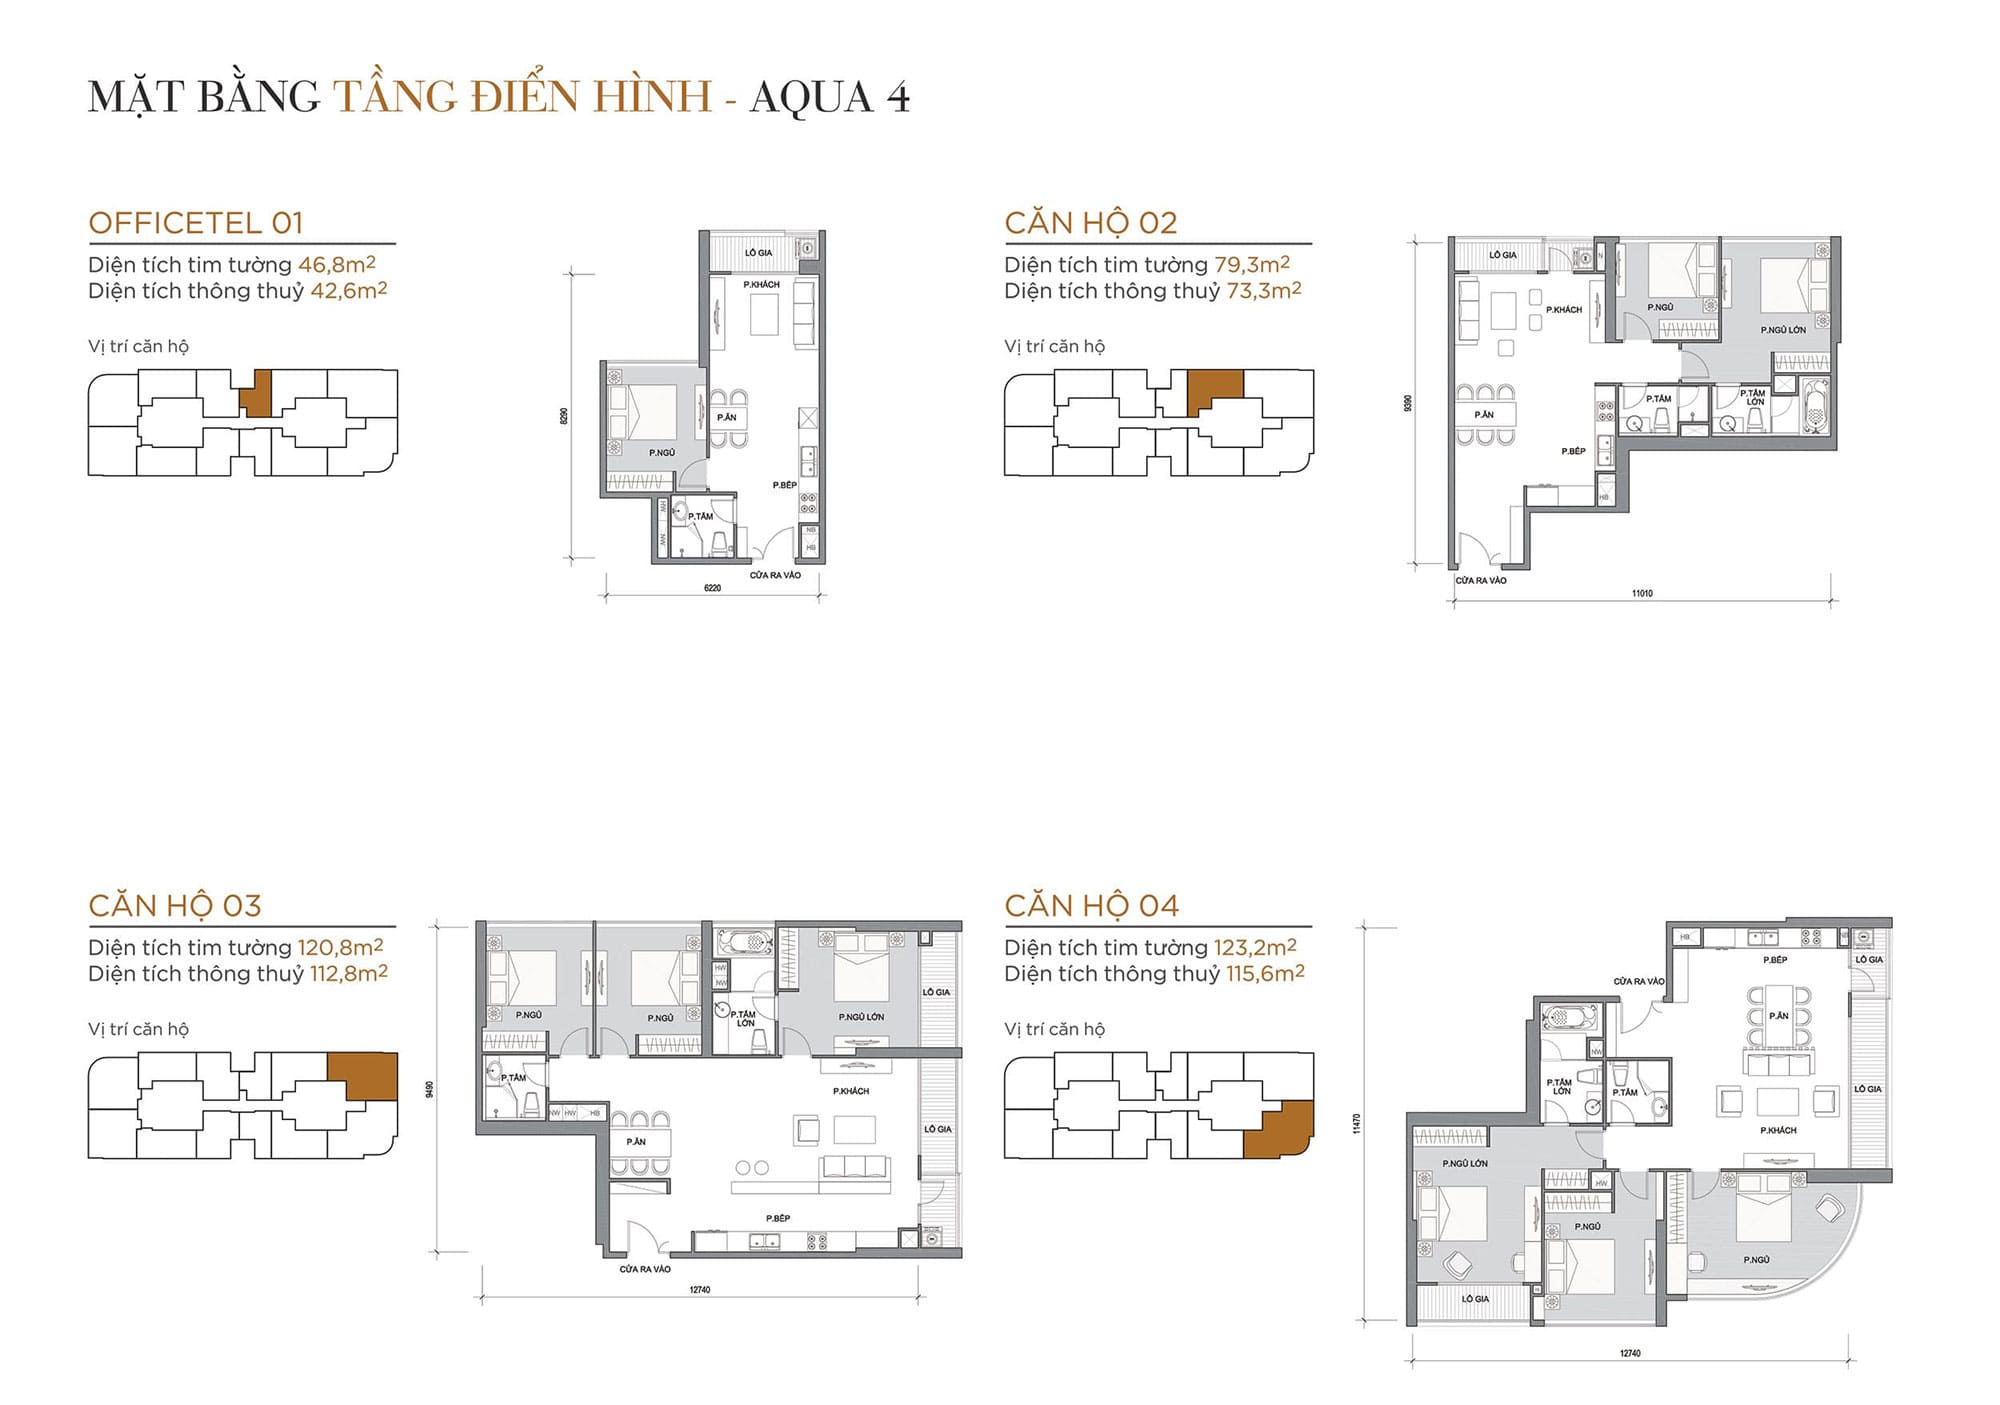 Layout căn hộ tầng điển hình tòa Aqua 4 loại Officetel 01, Căn hộ 02, Căn hộ 03, Căn hộ 04.